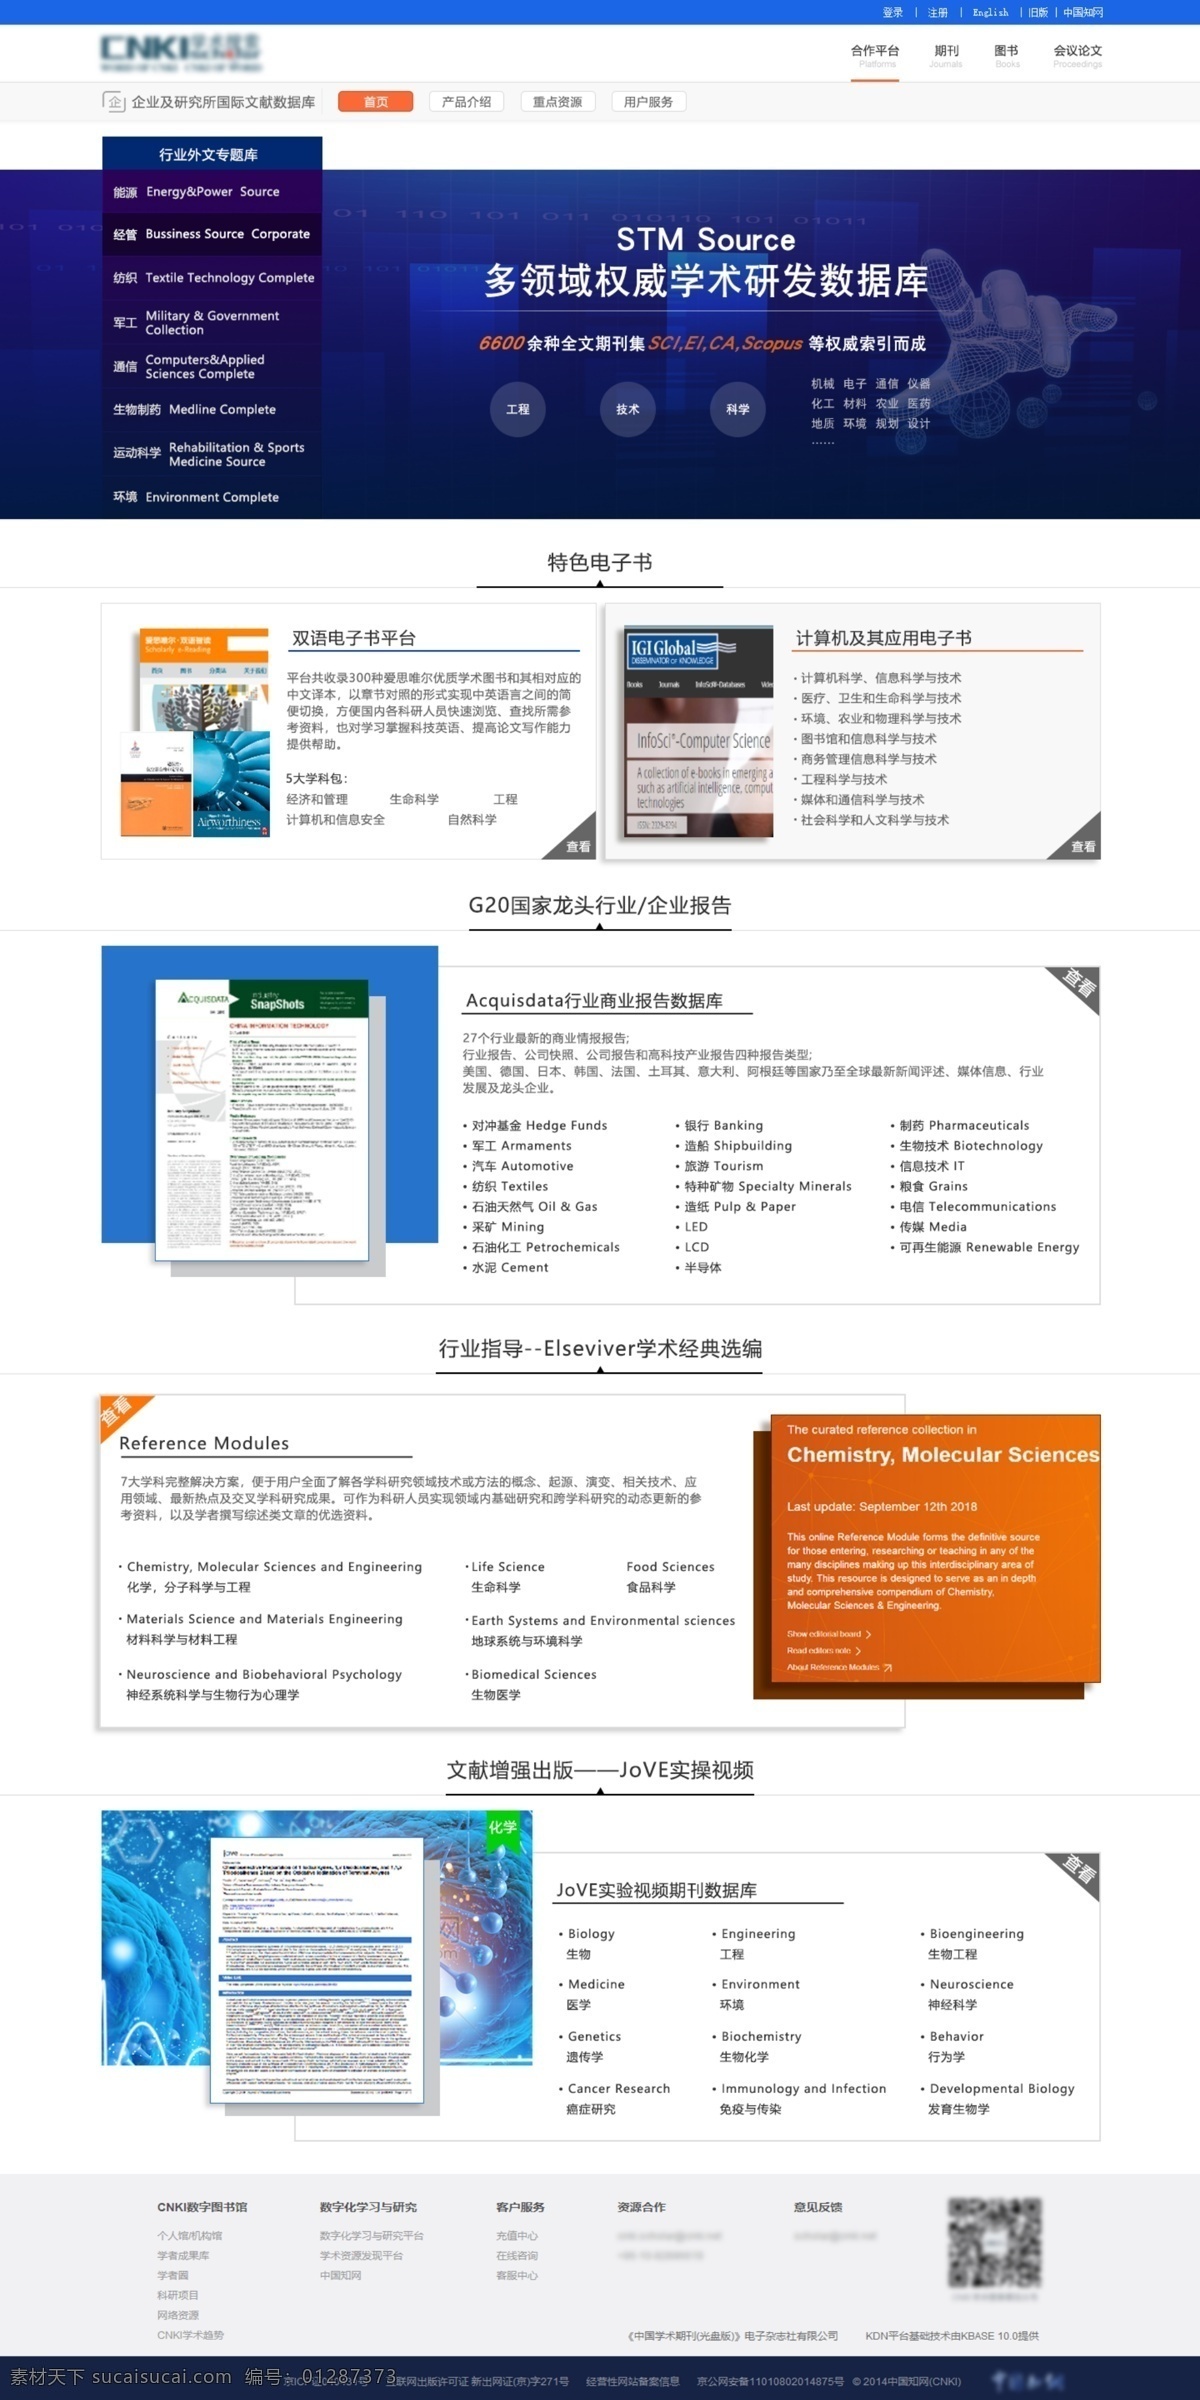 企业 行业 官 网 首页 展示 简洁 排版 学术 官网 资料展示